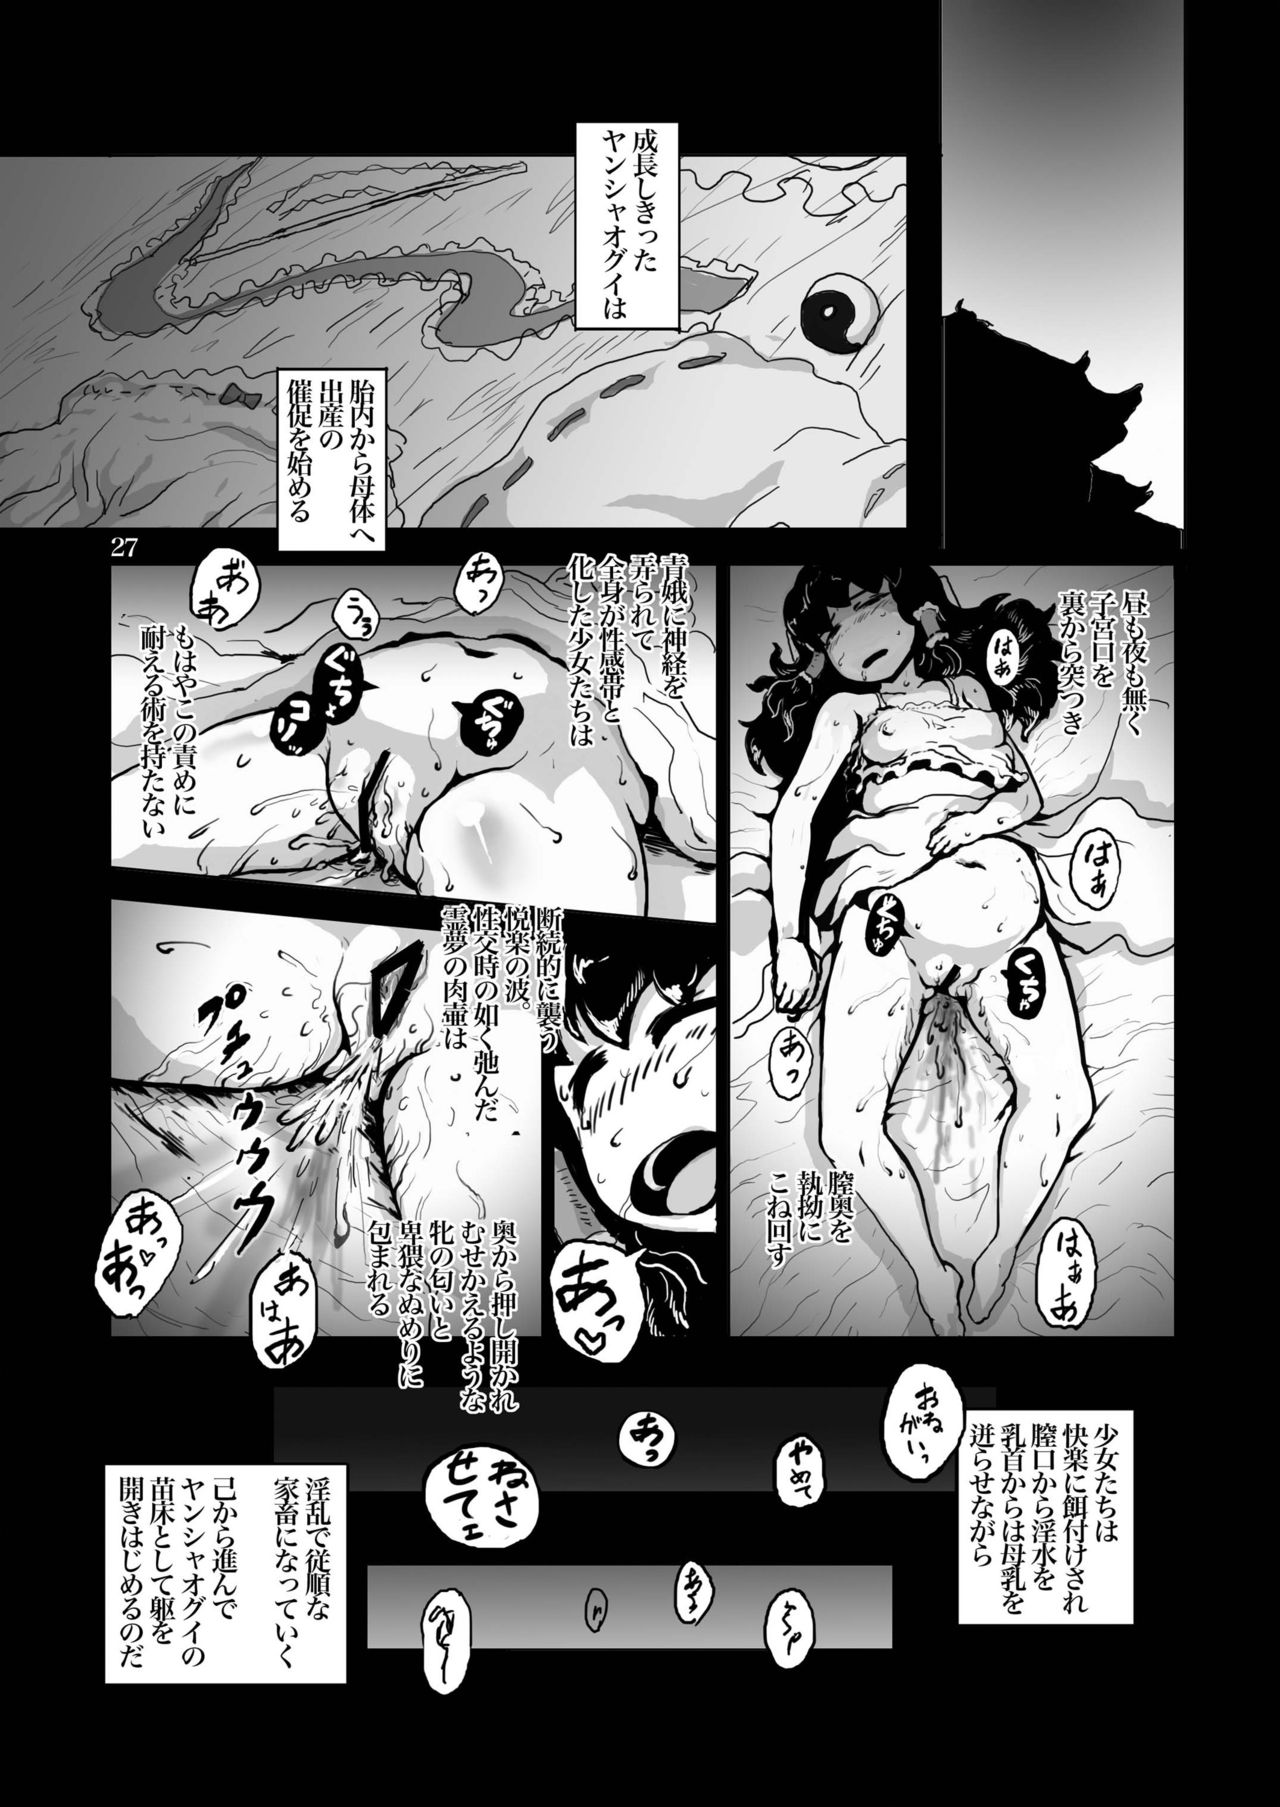 (Reitaisai 9) [Ana Futatsu (Wenajii)] Kichiku Ibun Shinreibyou (Touhou Project) (例大祭9) [穴ふたつ (エナジー)] 鬼畜 異聞神霊廟 (東方Project)